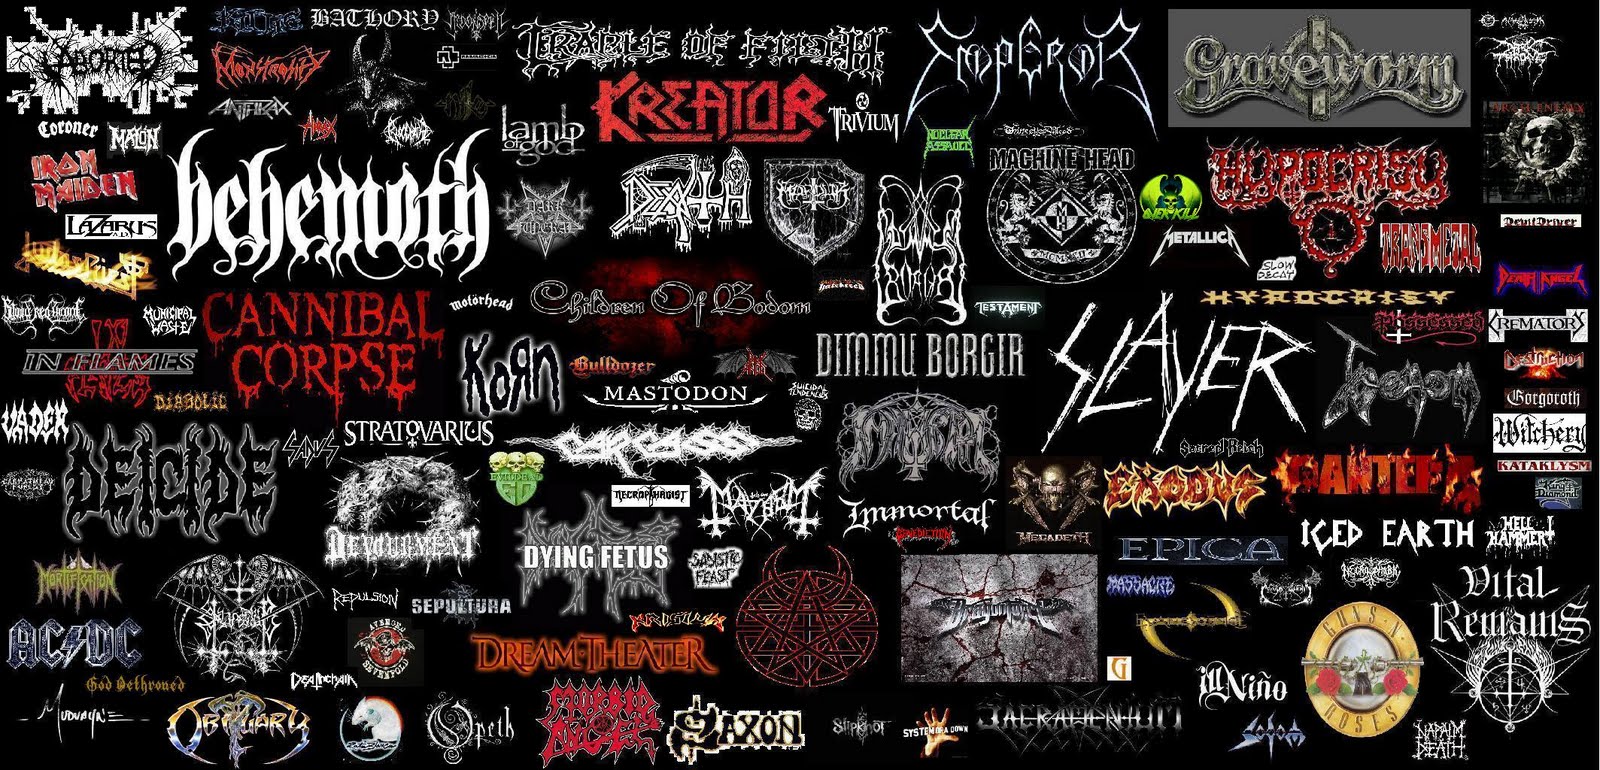 Евро метал групп. Black Metal группы название. Логотипы метал групп. Название дед метал групп. Doom Metal группы.